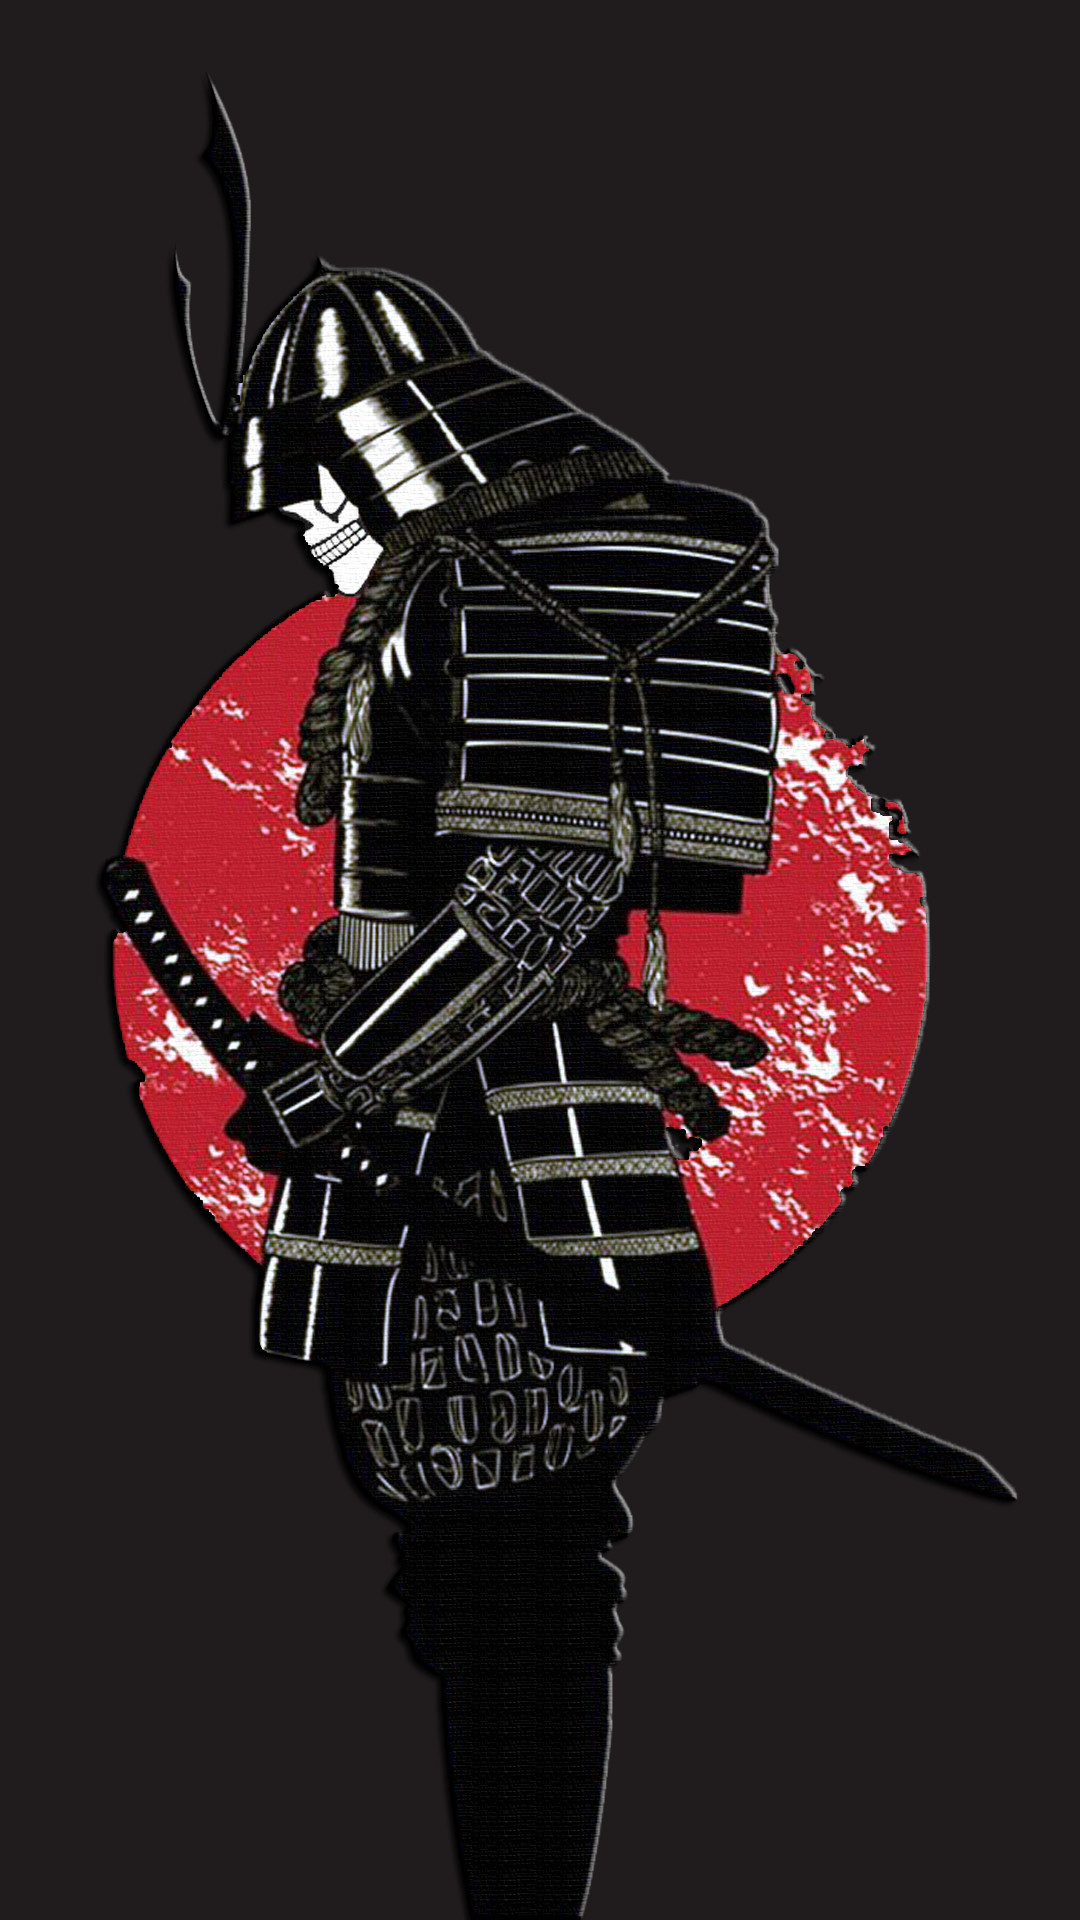 1080x1920 Samurai Wallpaper Phone by DarkPrayer93 on DeviantArt